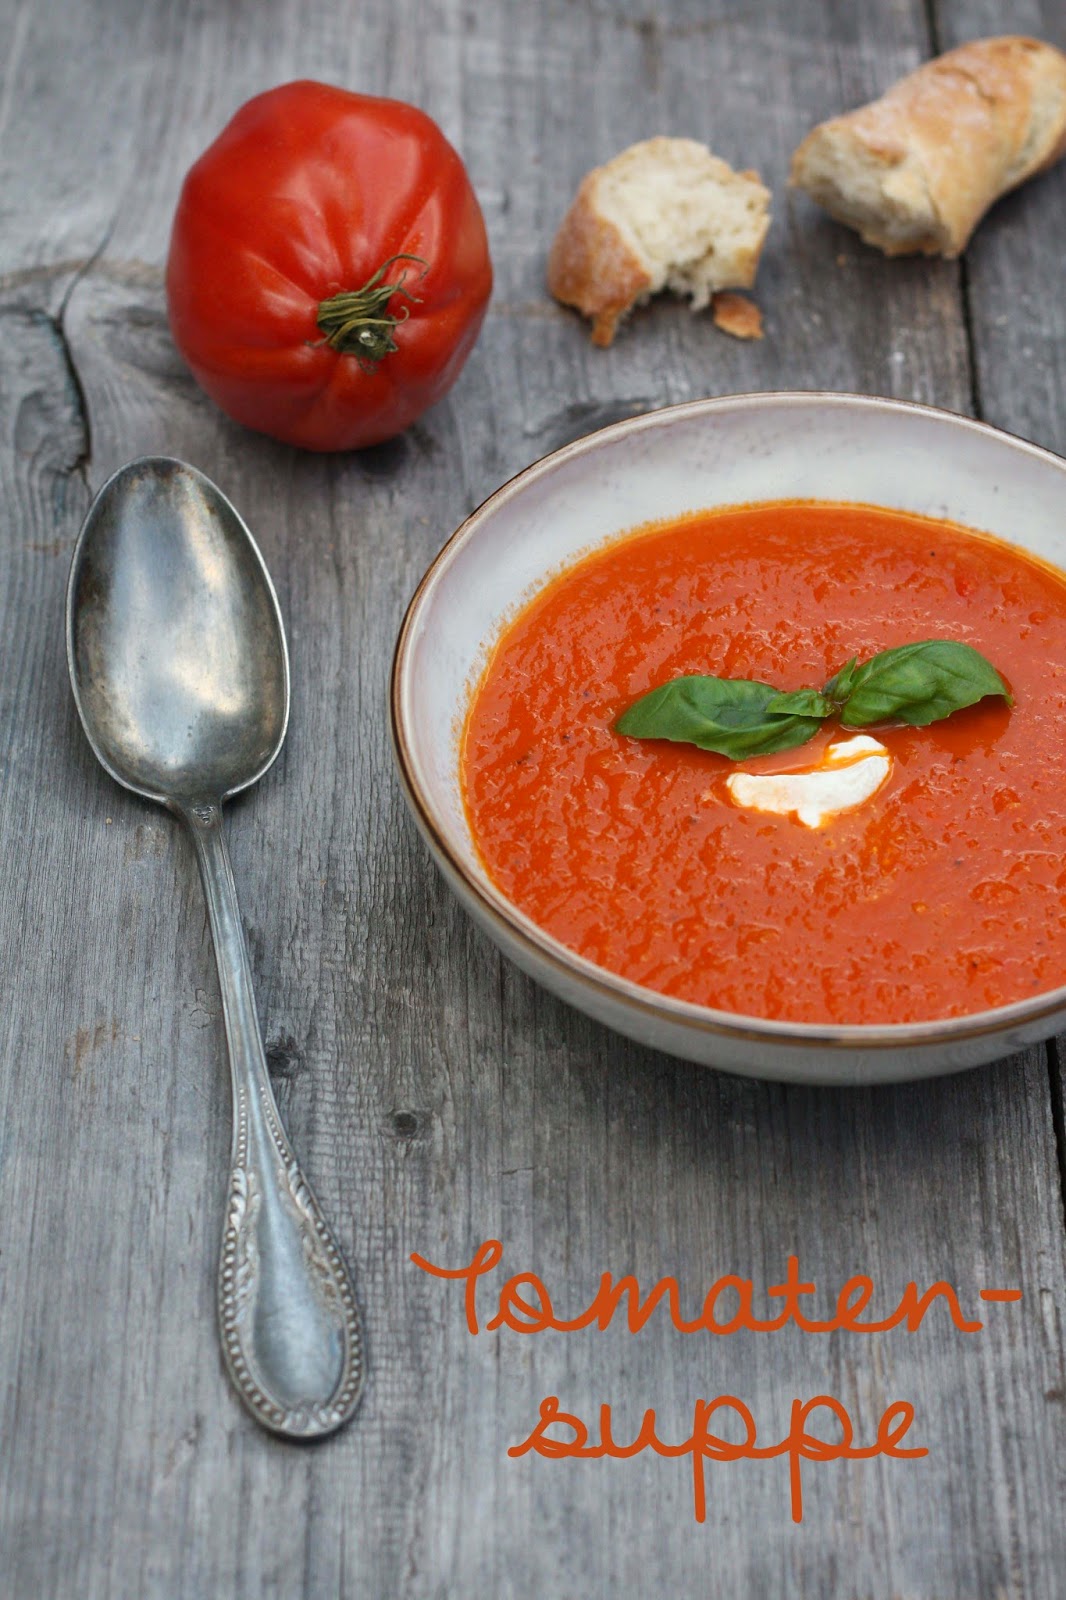 Herzstück: Leckere Tomatensuppe schnell gemacht